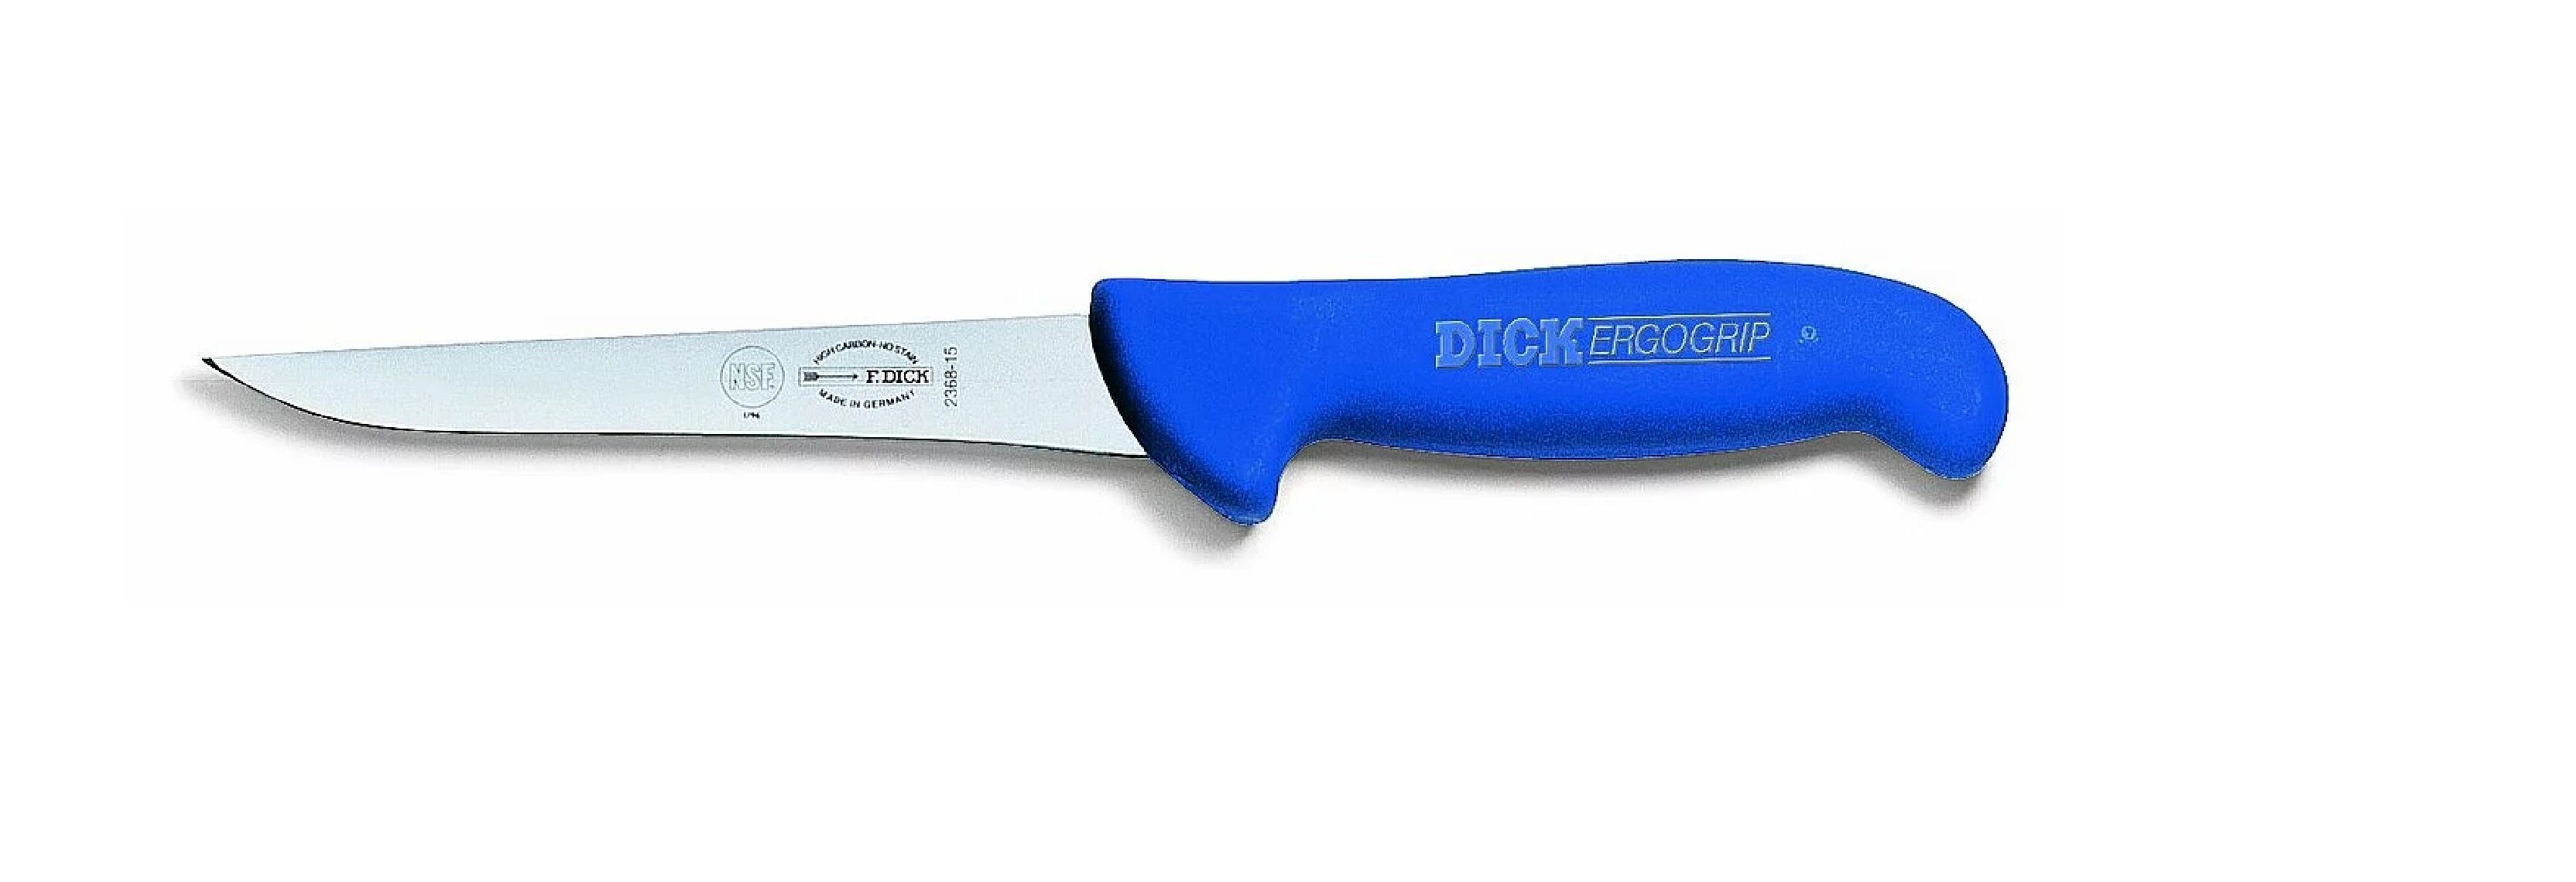 Dick Ausbeinmesser Dick Ausbeinmesser 10 Ergogrip 8236810 cm